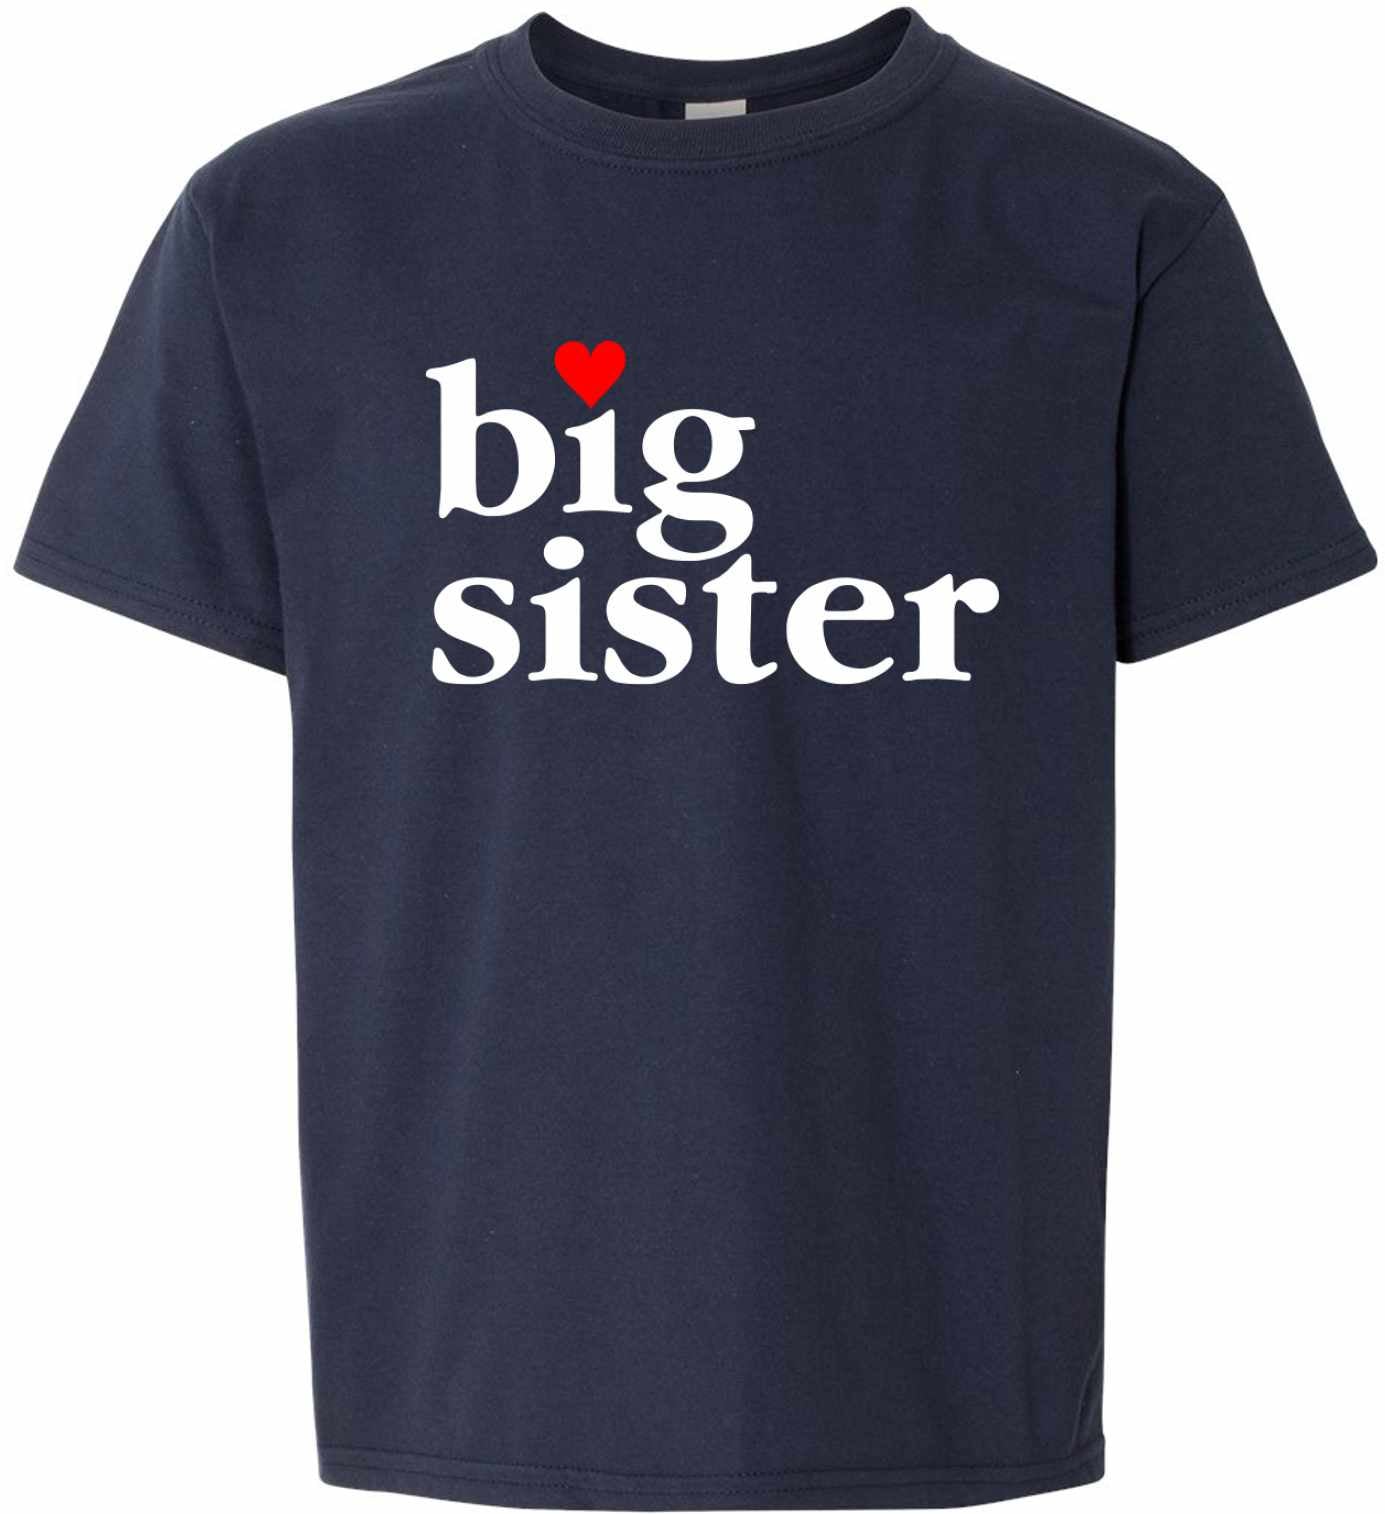 Big Sister on Kids T-Shirt (#986-201)